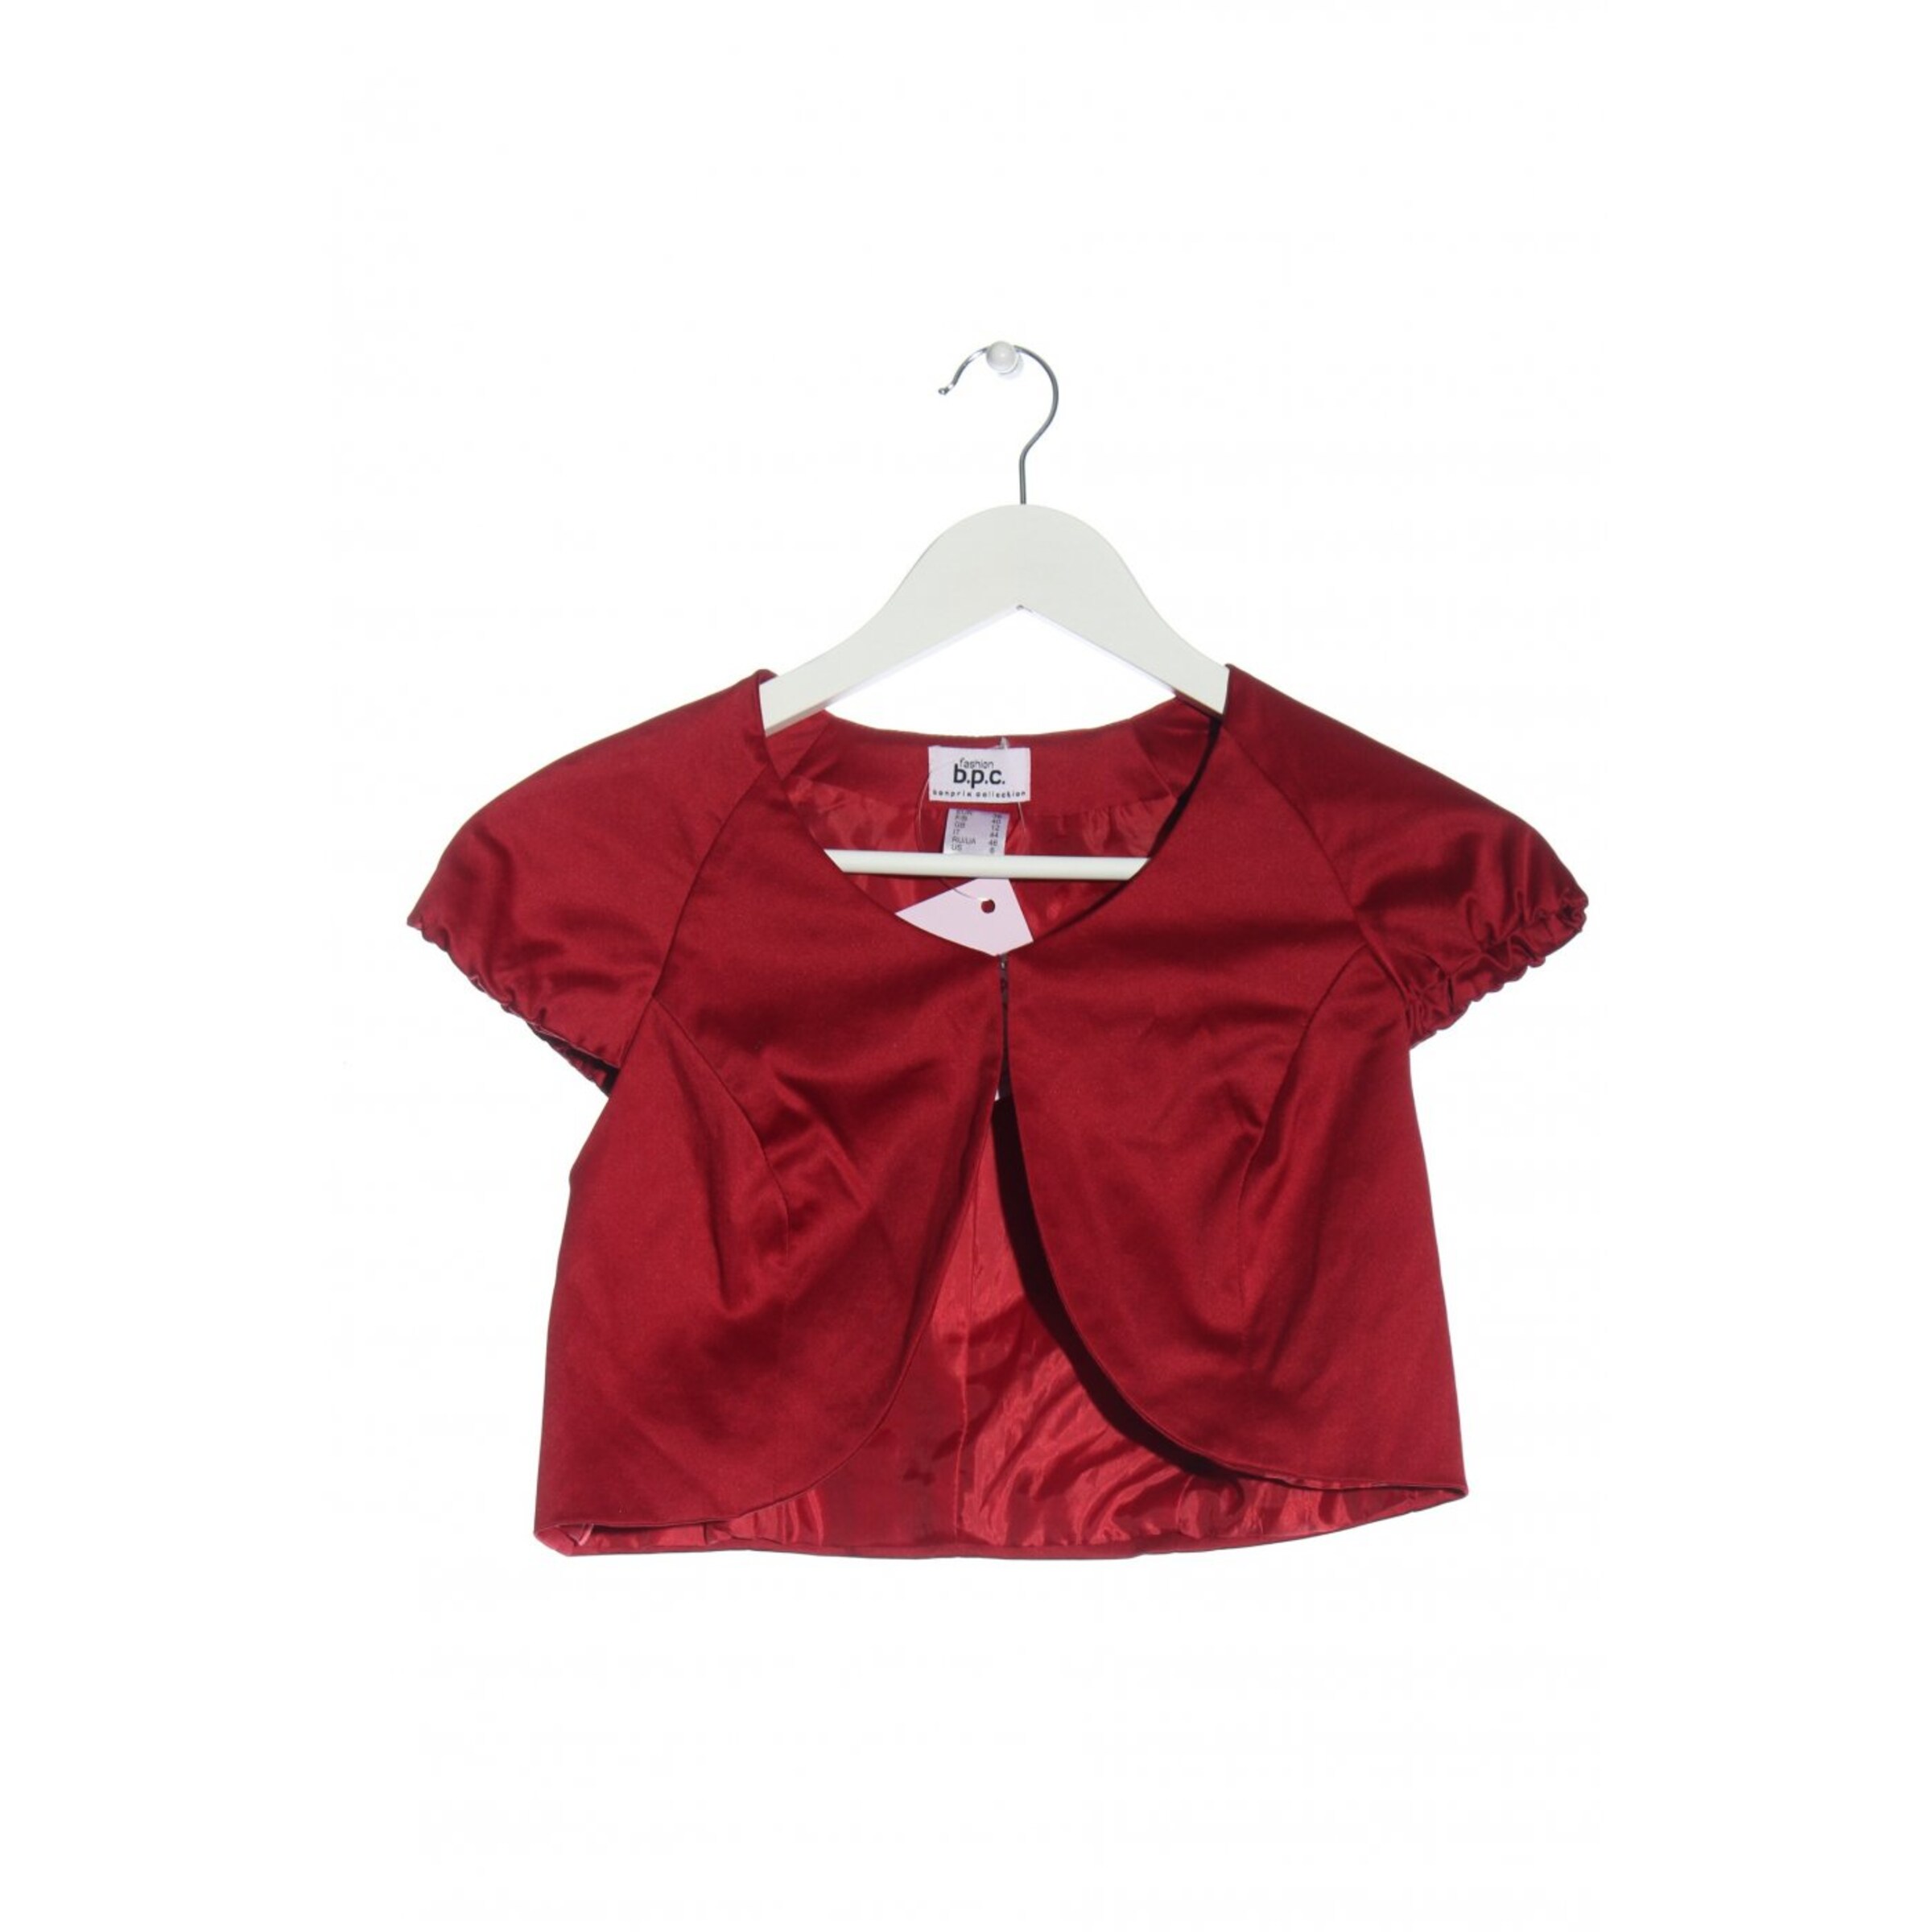 Moda Strój tradycyjny Dirndl bpc bonprix collection Dirndl czerwony-w kolorze bia\u0142ej we\u0142ny Elegancki 